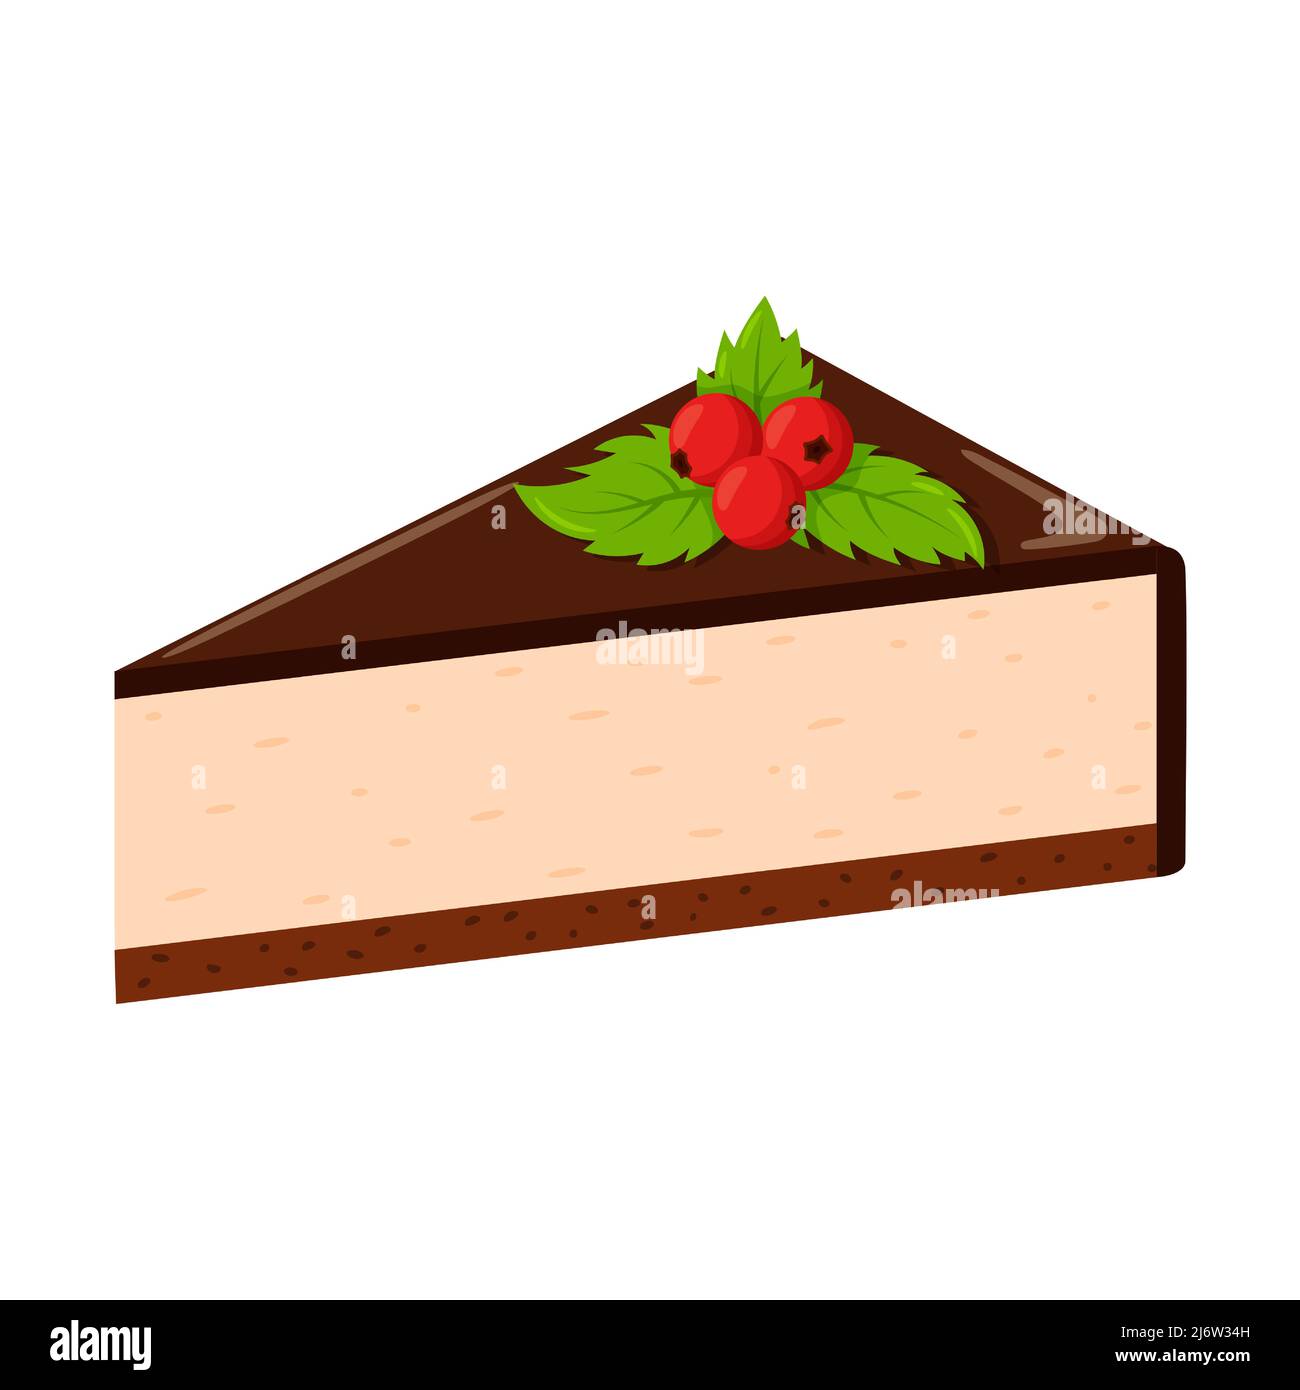 Cheesecake al cioccolato con frutti di bosco e foglie di menta. Cibi grassi, ad alto contenuto calorico, malsani. Dessert, yummy, delizioso. Illustrazione in stile cartoon flat. IO Illustrazione Vettoriale